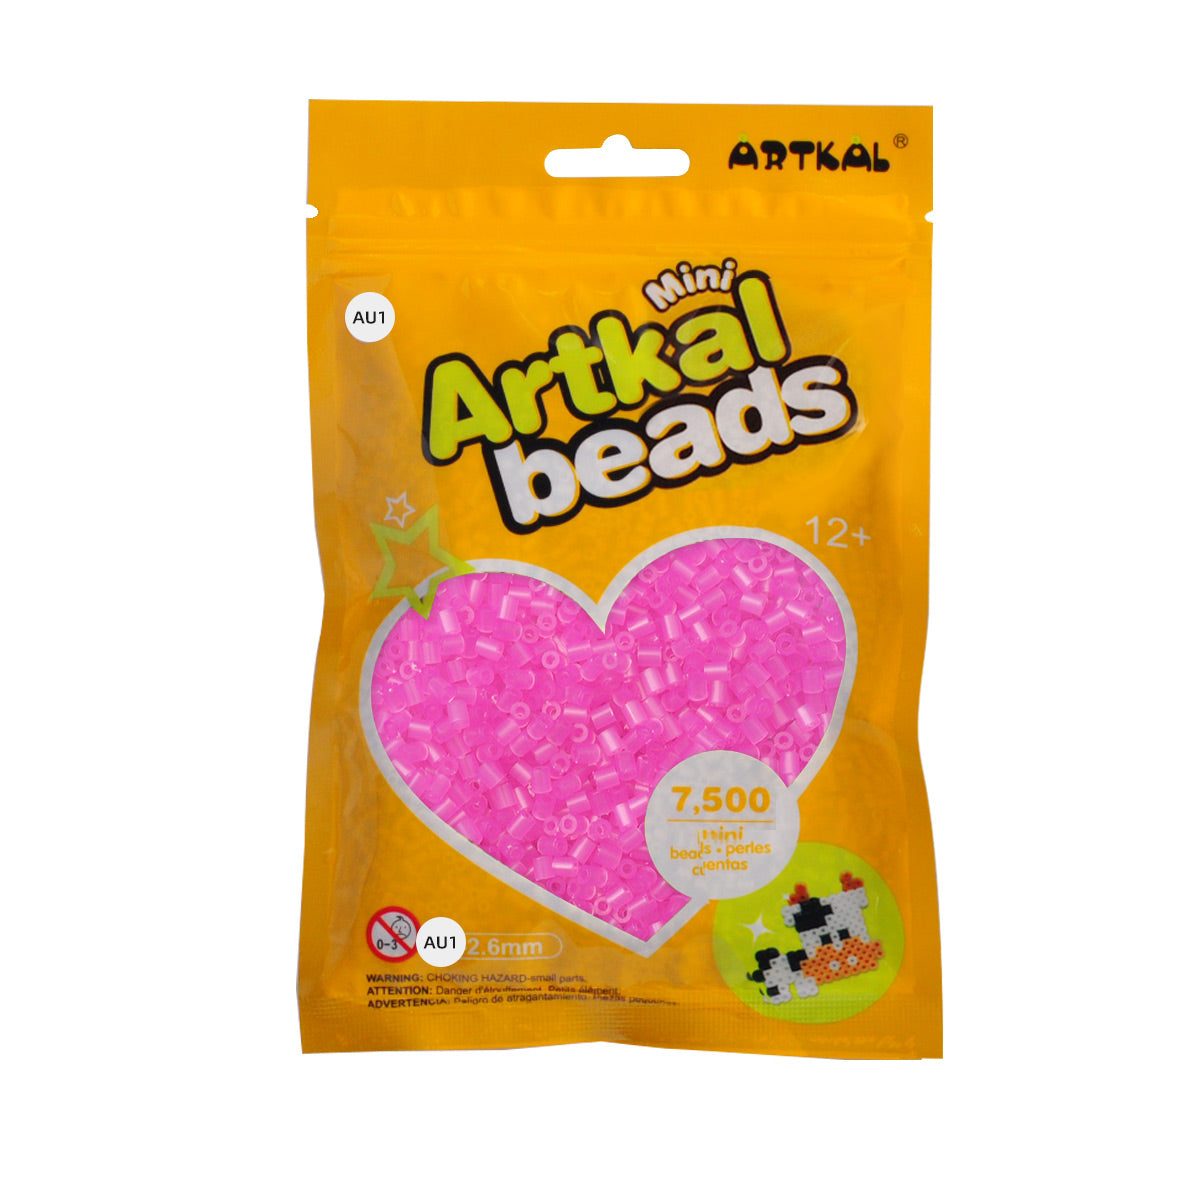 (AU1-AU4) A-2.6mm 7500P single pack mini artkal beads